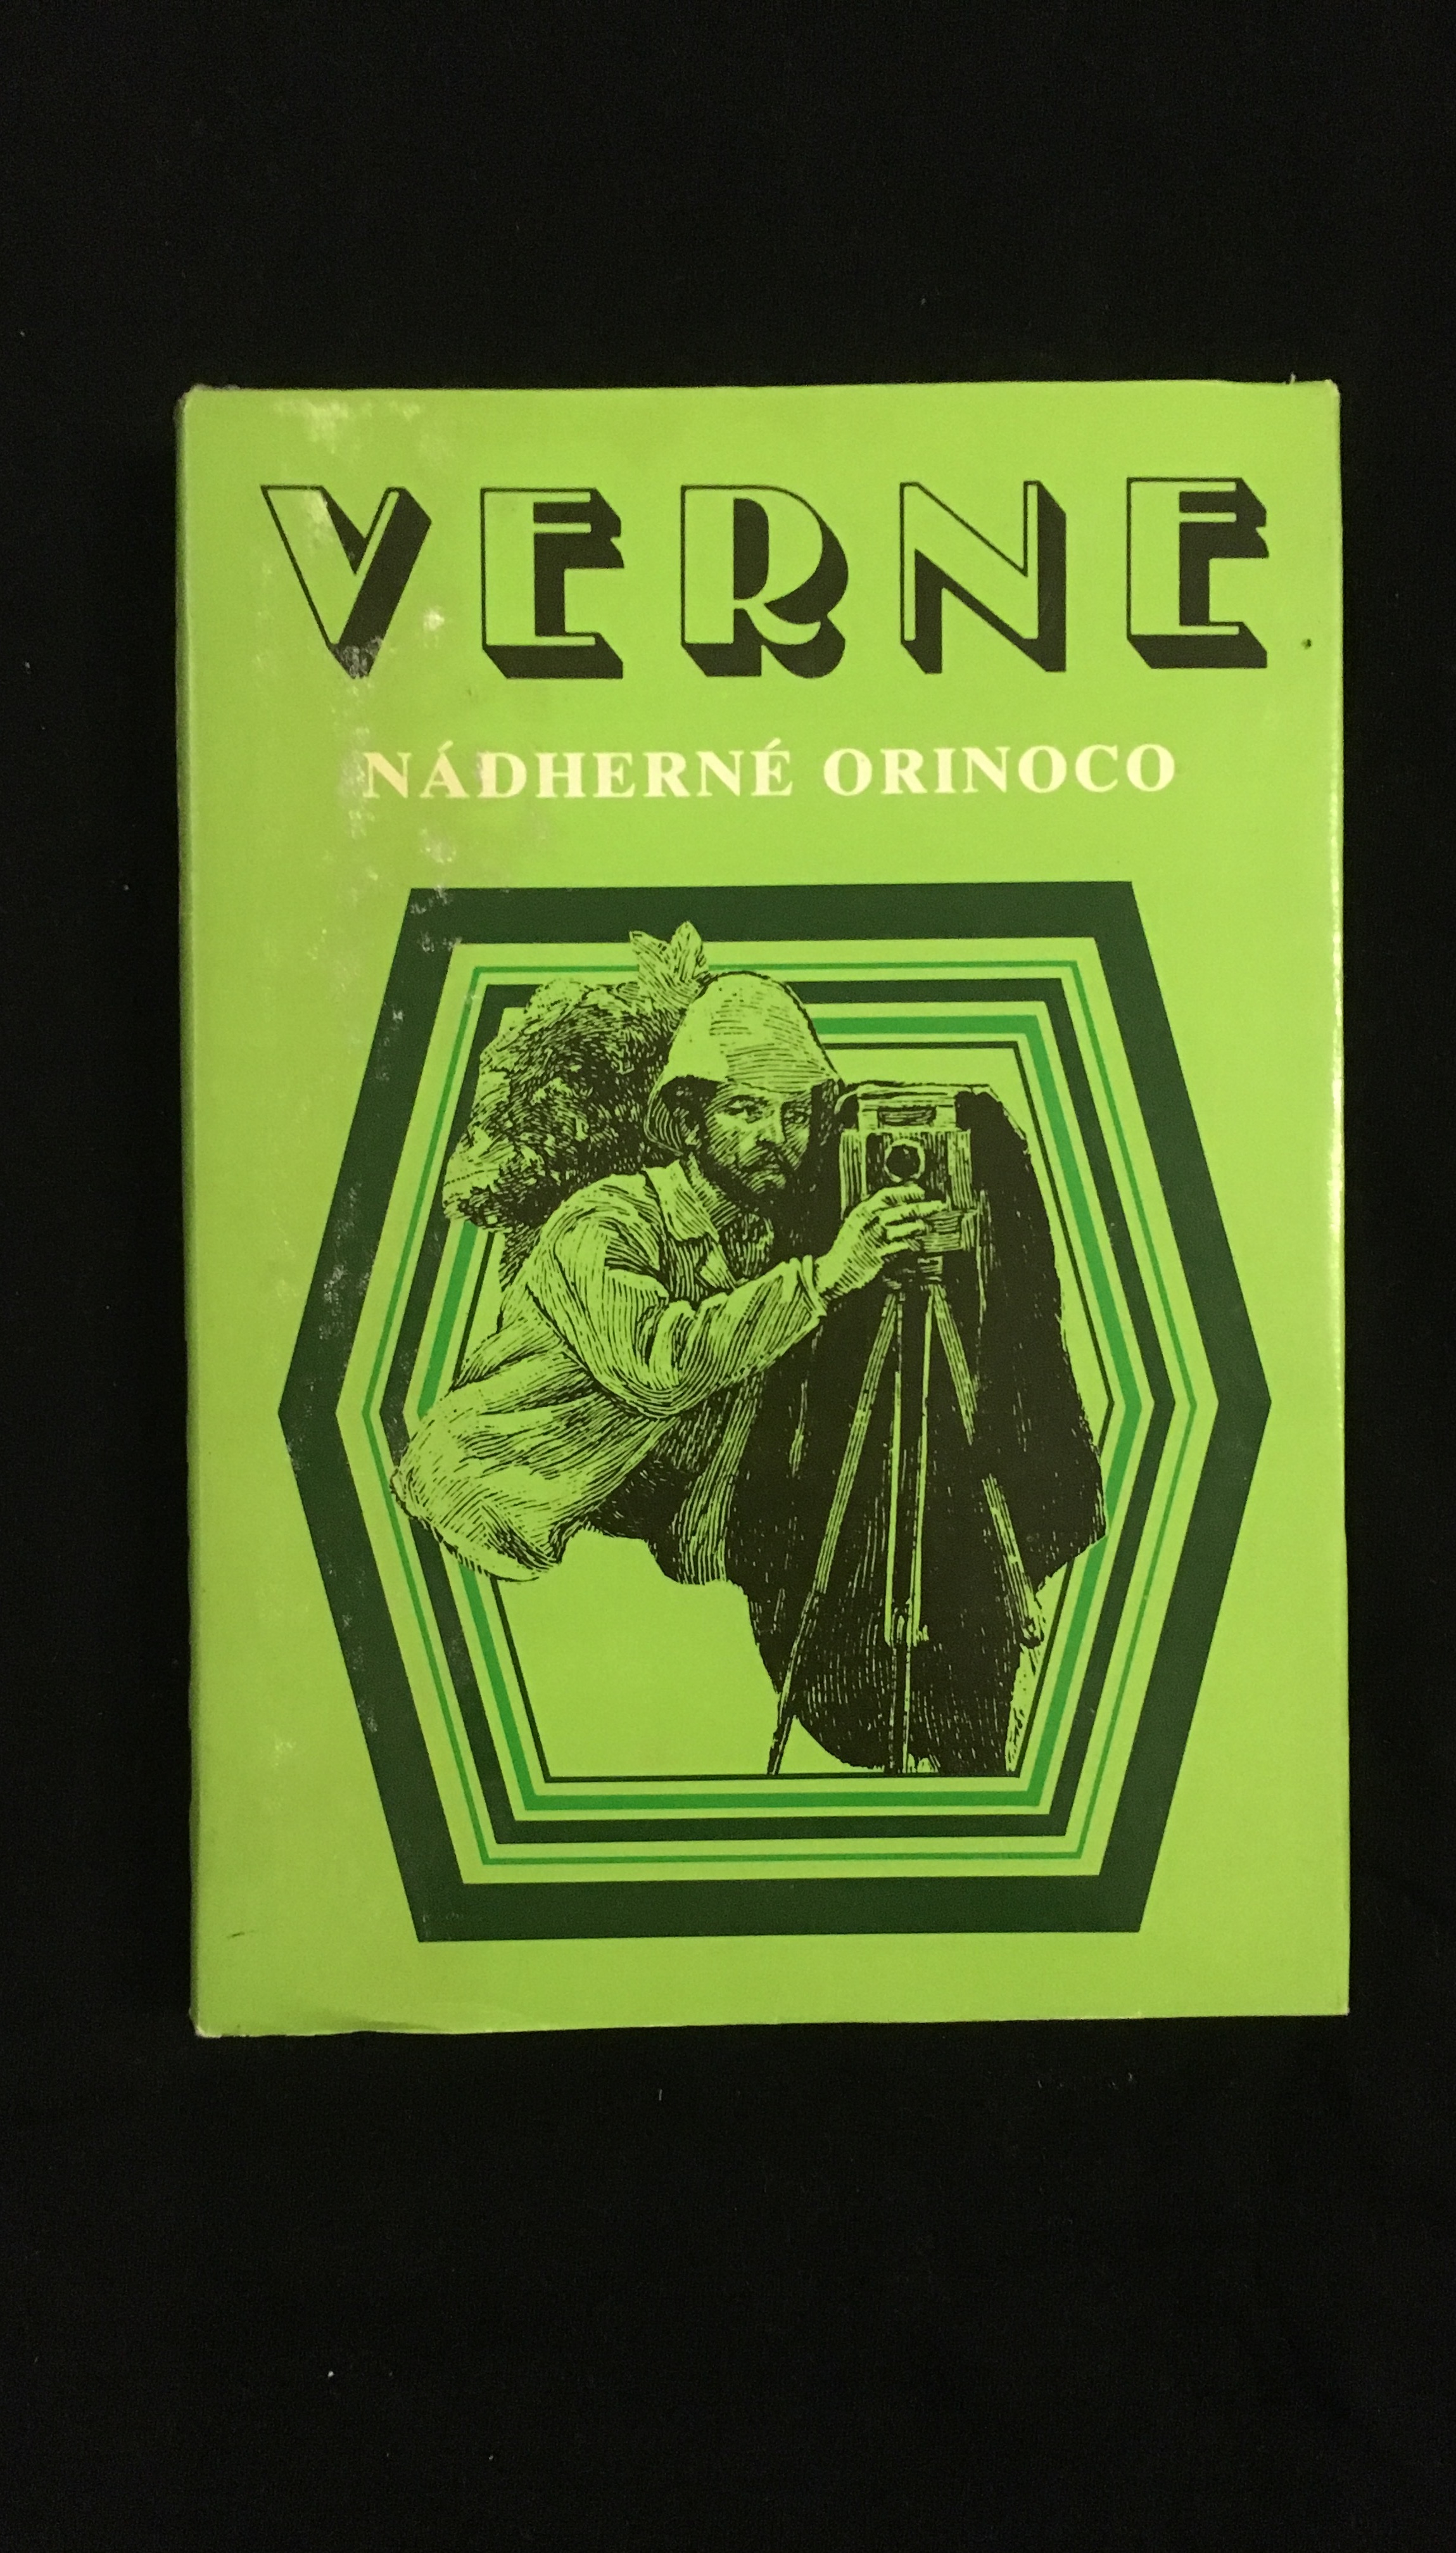 J.Verne-Nádherné orinoco(1978)